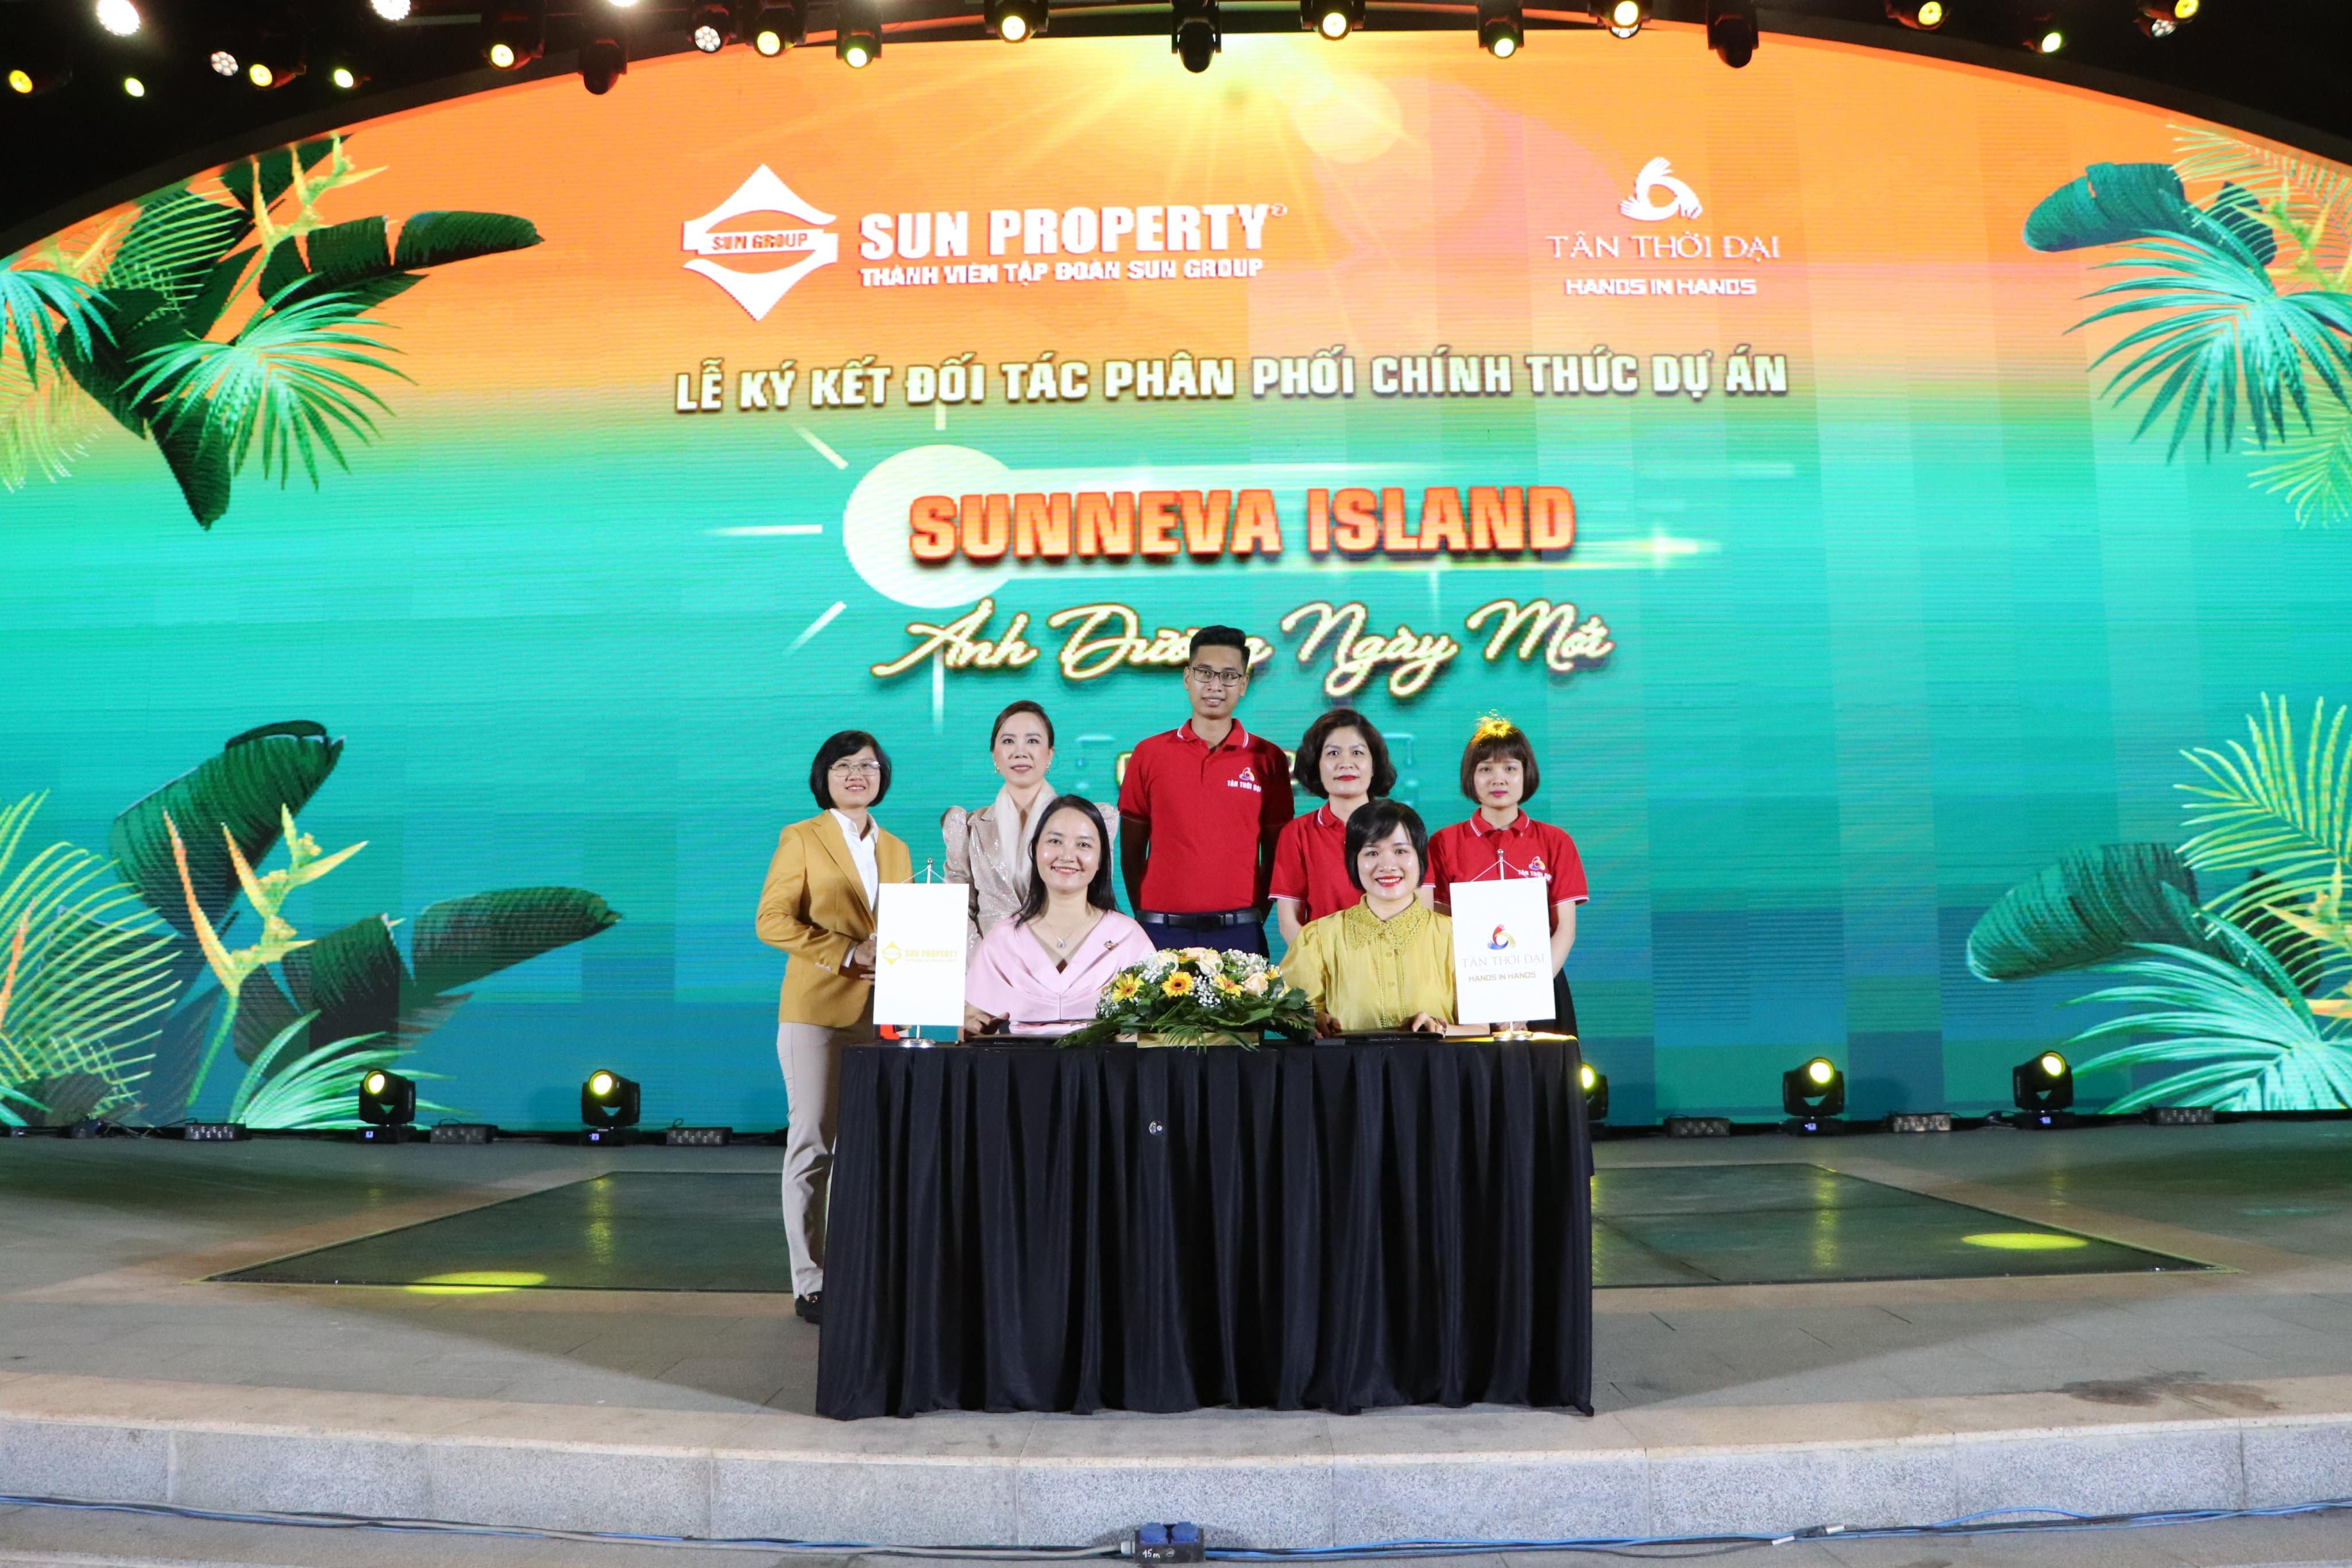 Tân Thời Đại chính thức phân phối dự án Sunneva Island - Đà Nẵng